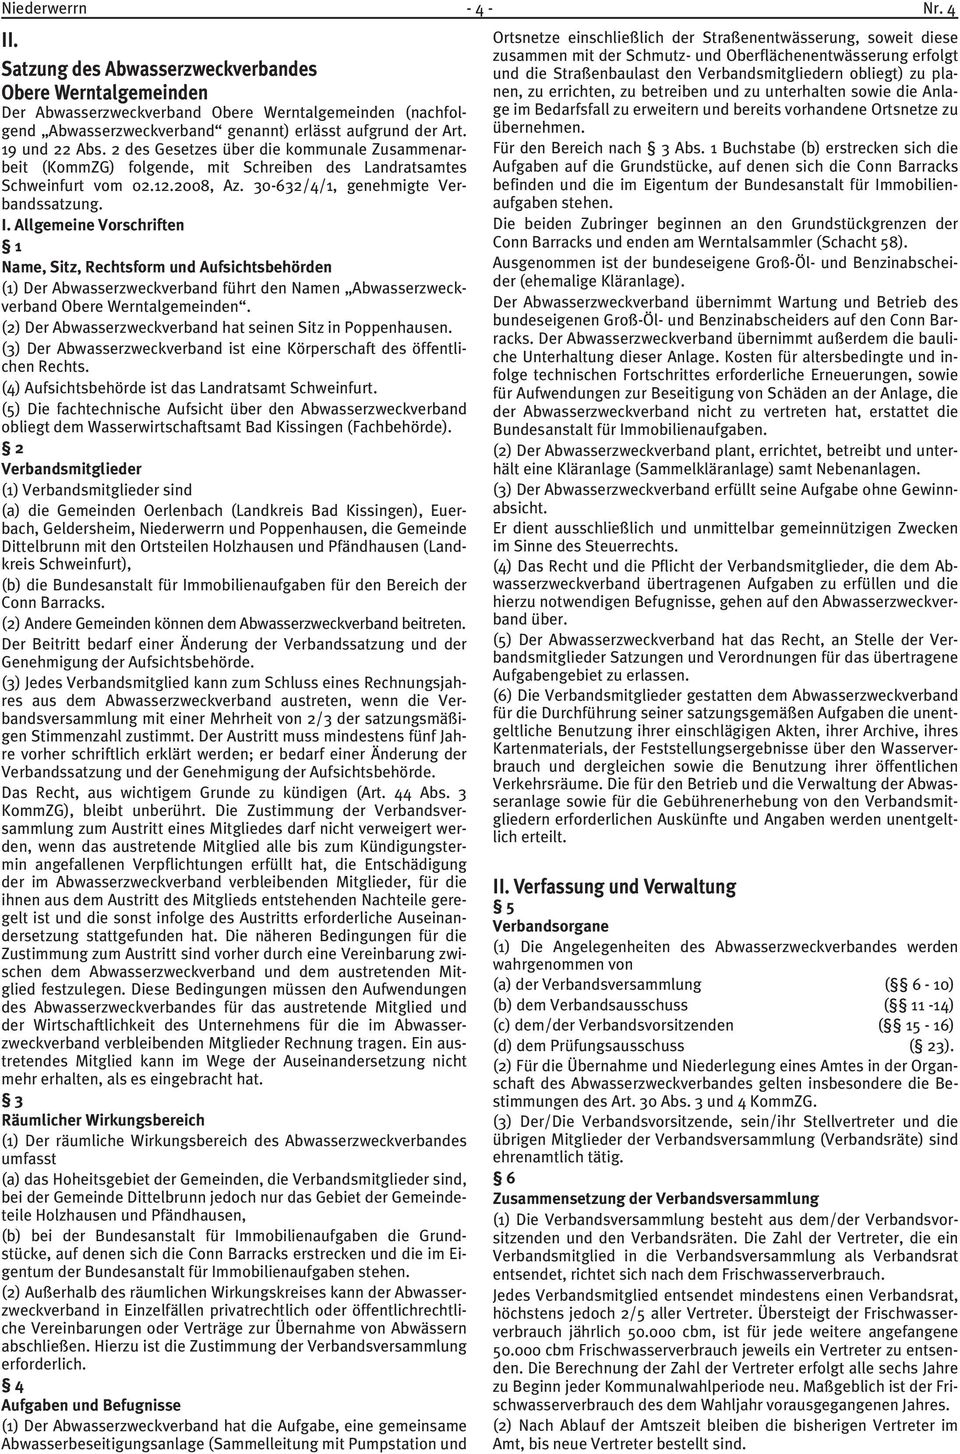 2 des Gesetzes über die kommunale Zusammenarbeit (KommZG) folgende, mit Schreiben des Landratsamtes Schweinfurt vom 02.12.2008, Az. 30-632/4/1, genehmigte Verbandssatzung. I.